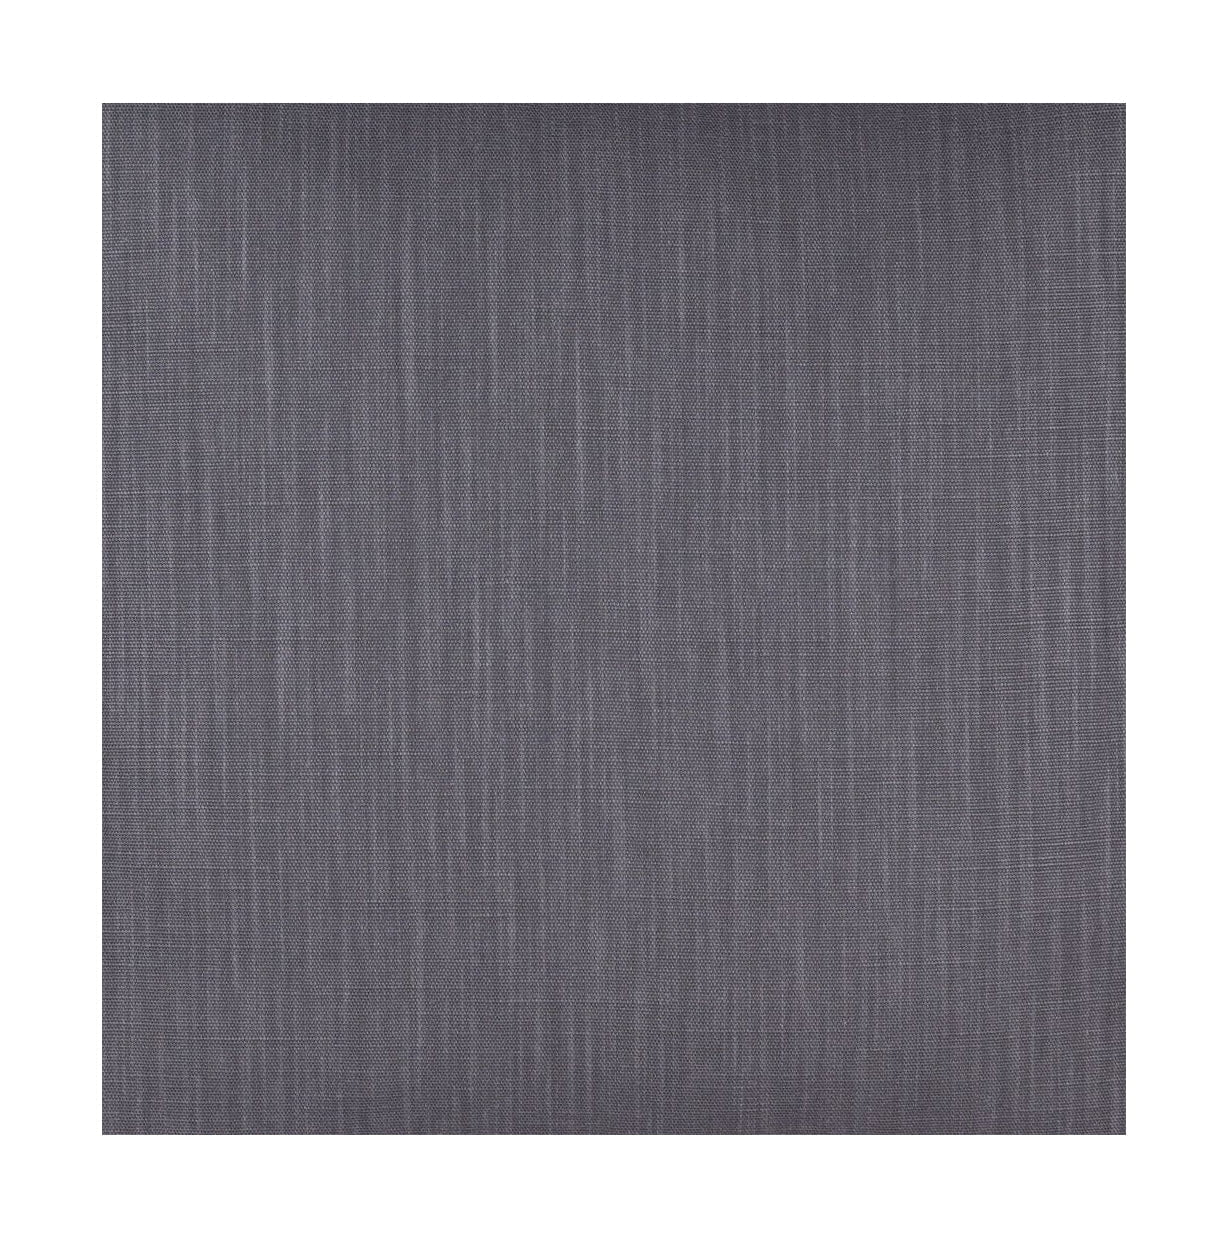 Spira Klotz stoffbredde 150 cm (pris per meter), grå